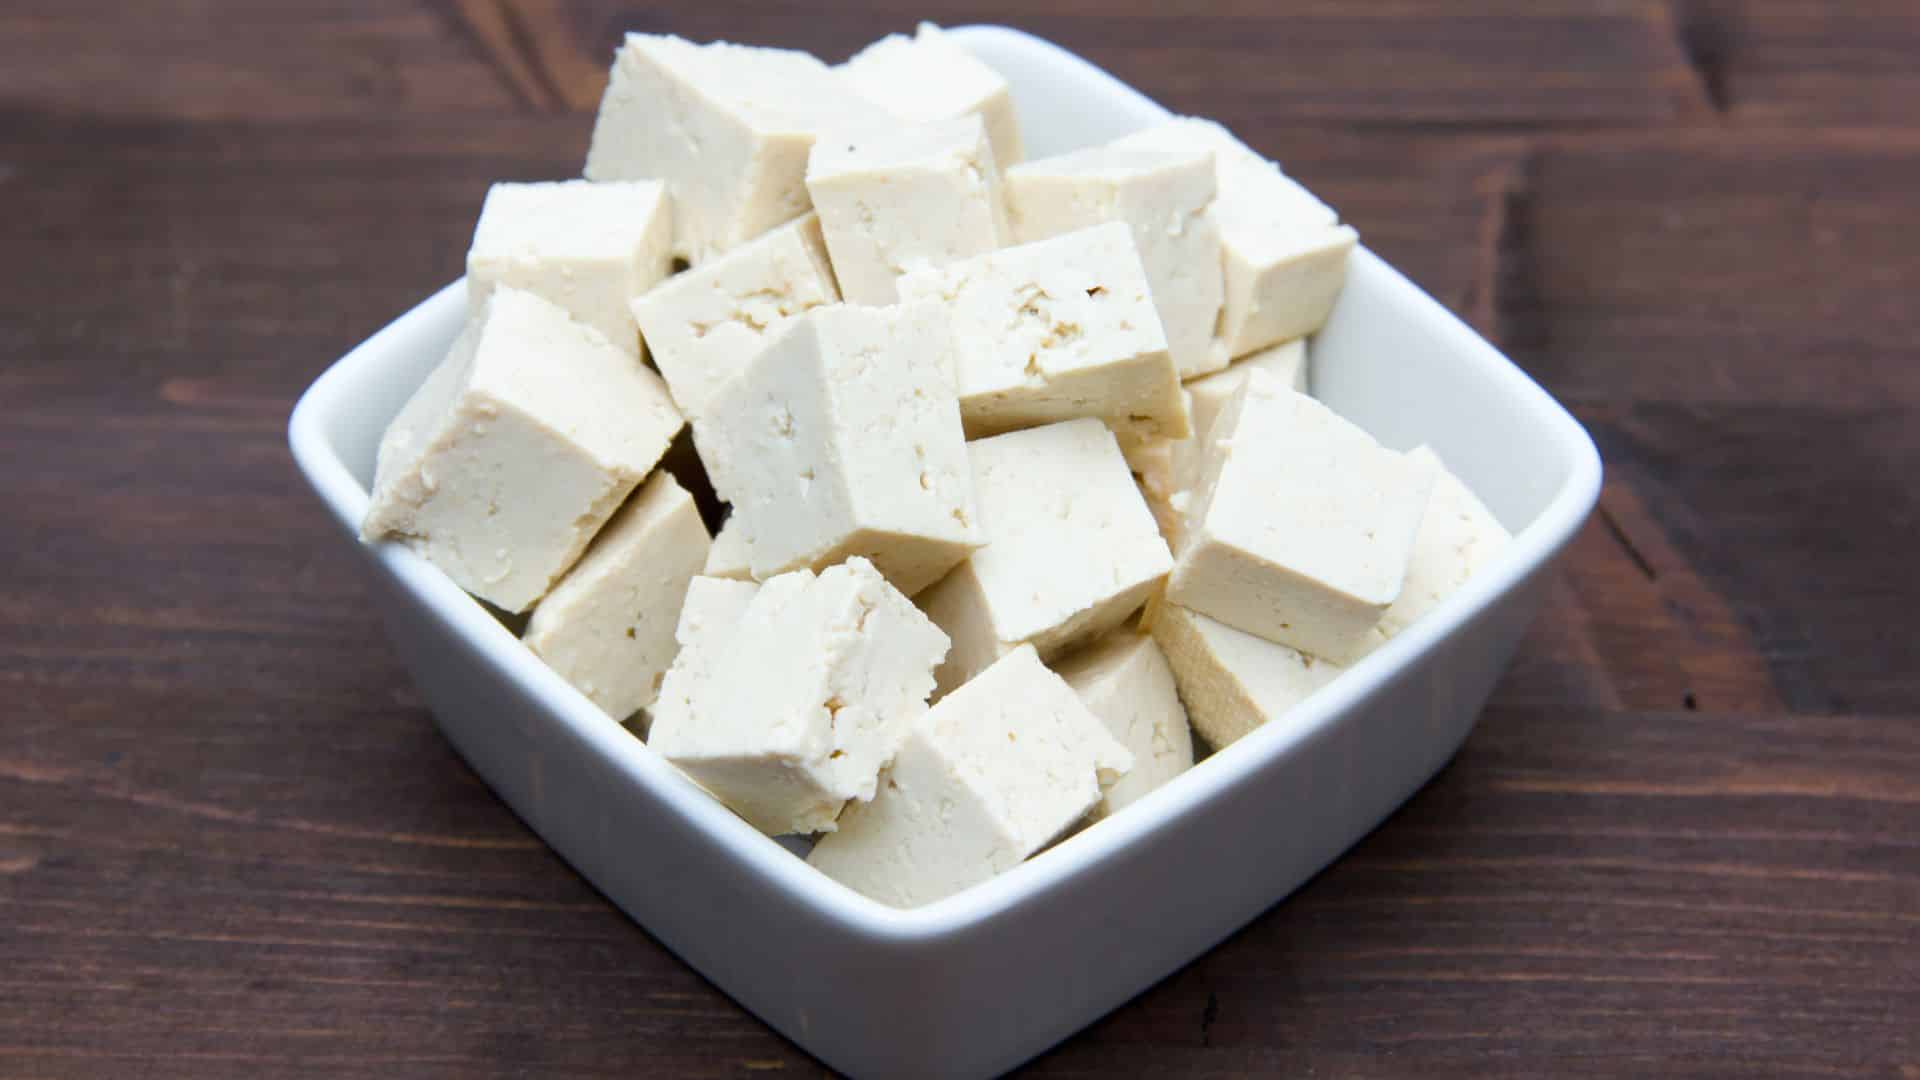 Receita de tofu